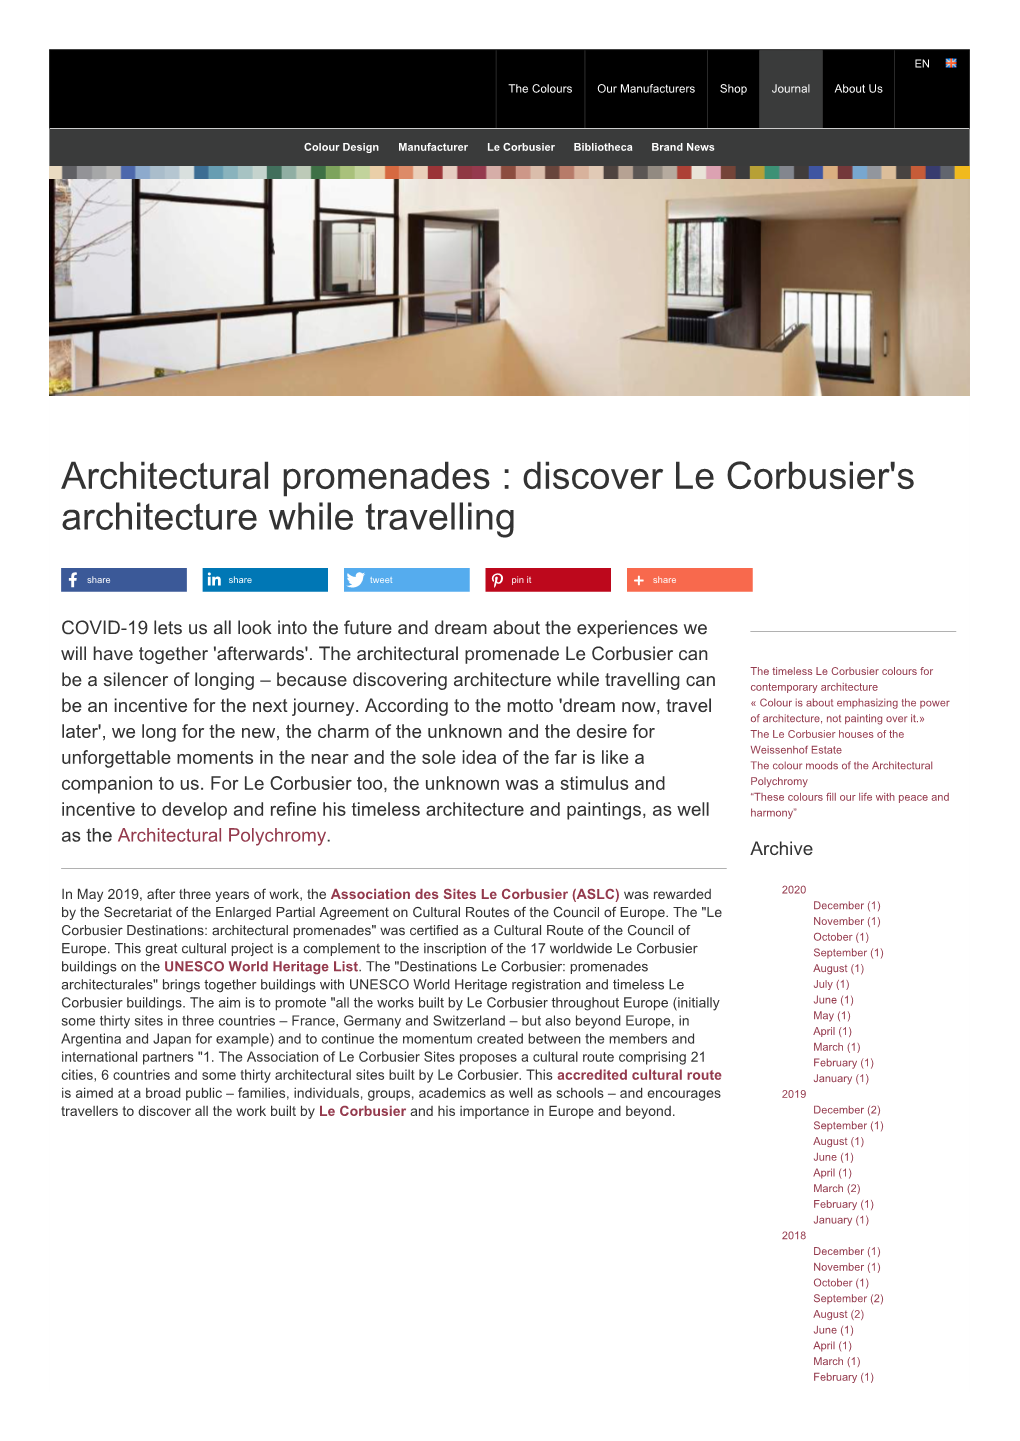 Architectural Promenades : Discover Le Corbusier's Architecture While Travelling